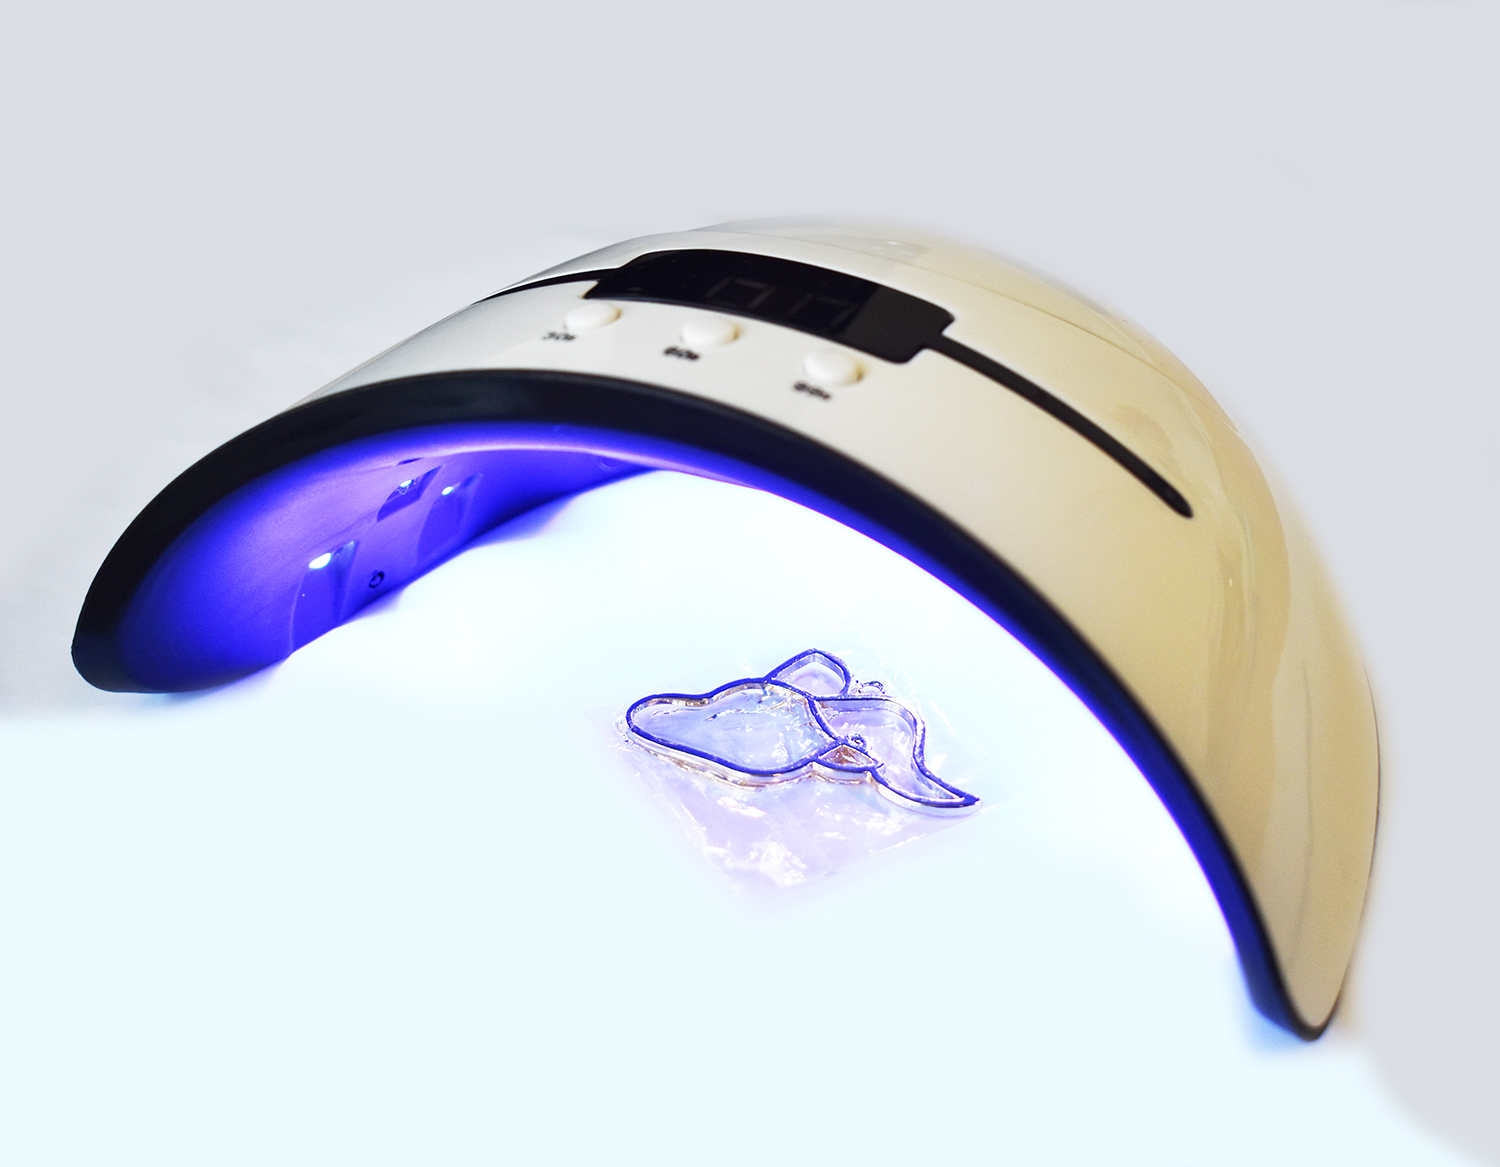 Résine UV avec Lampe UV 36W - 300g Résine Epoxy UV Transparent Faible Odeur  avec Lampe pour